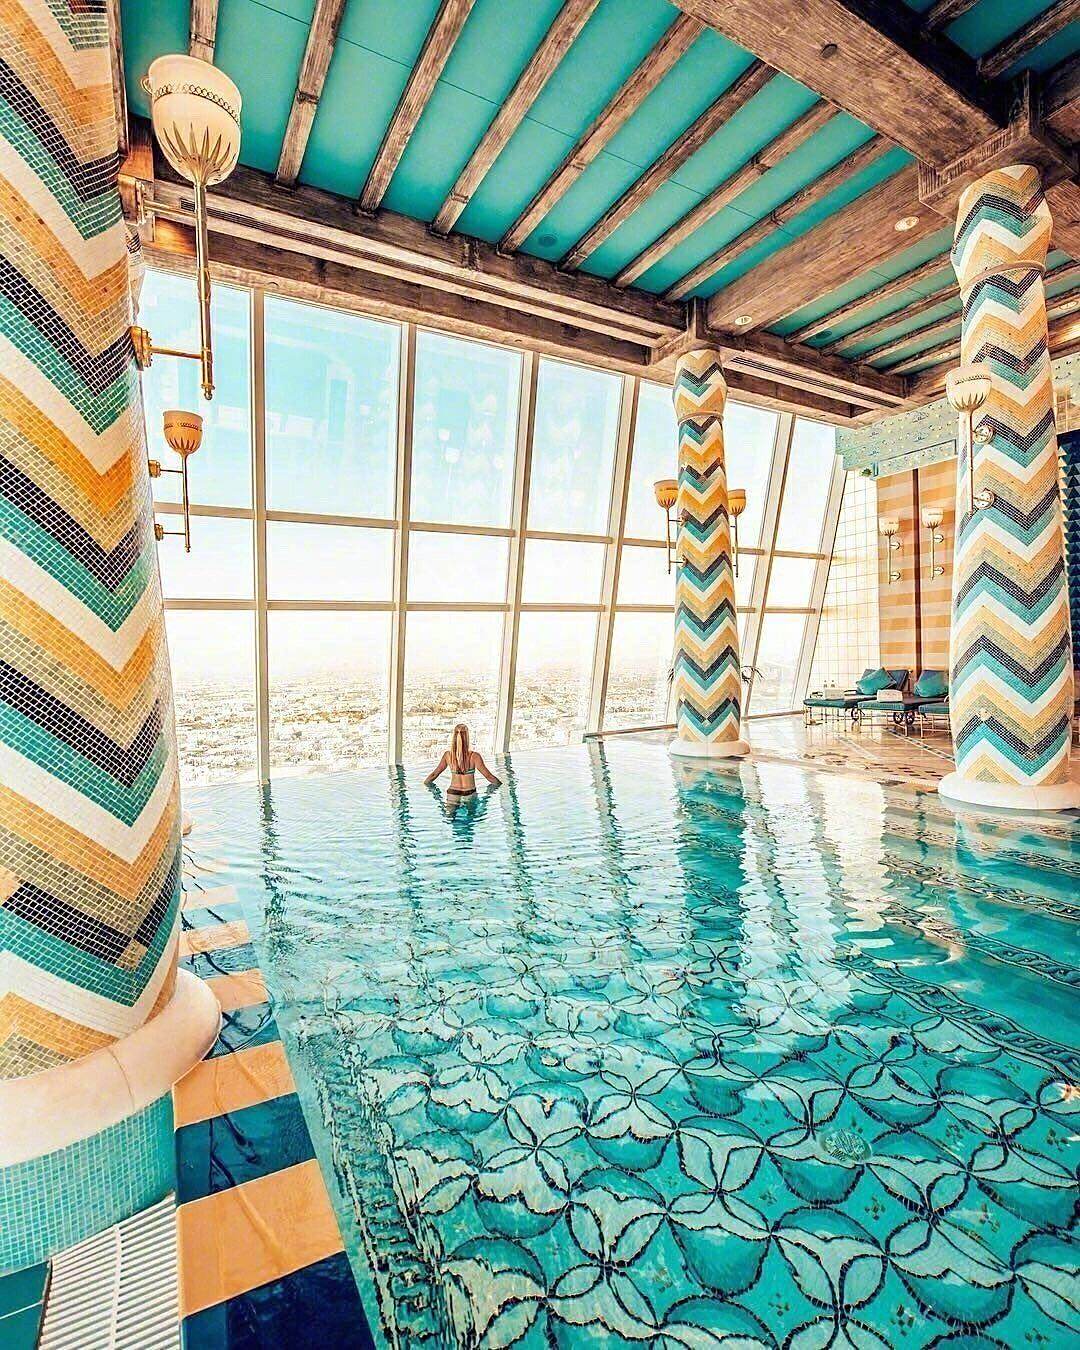 帆船酒店游泳池图片